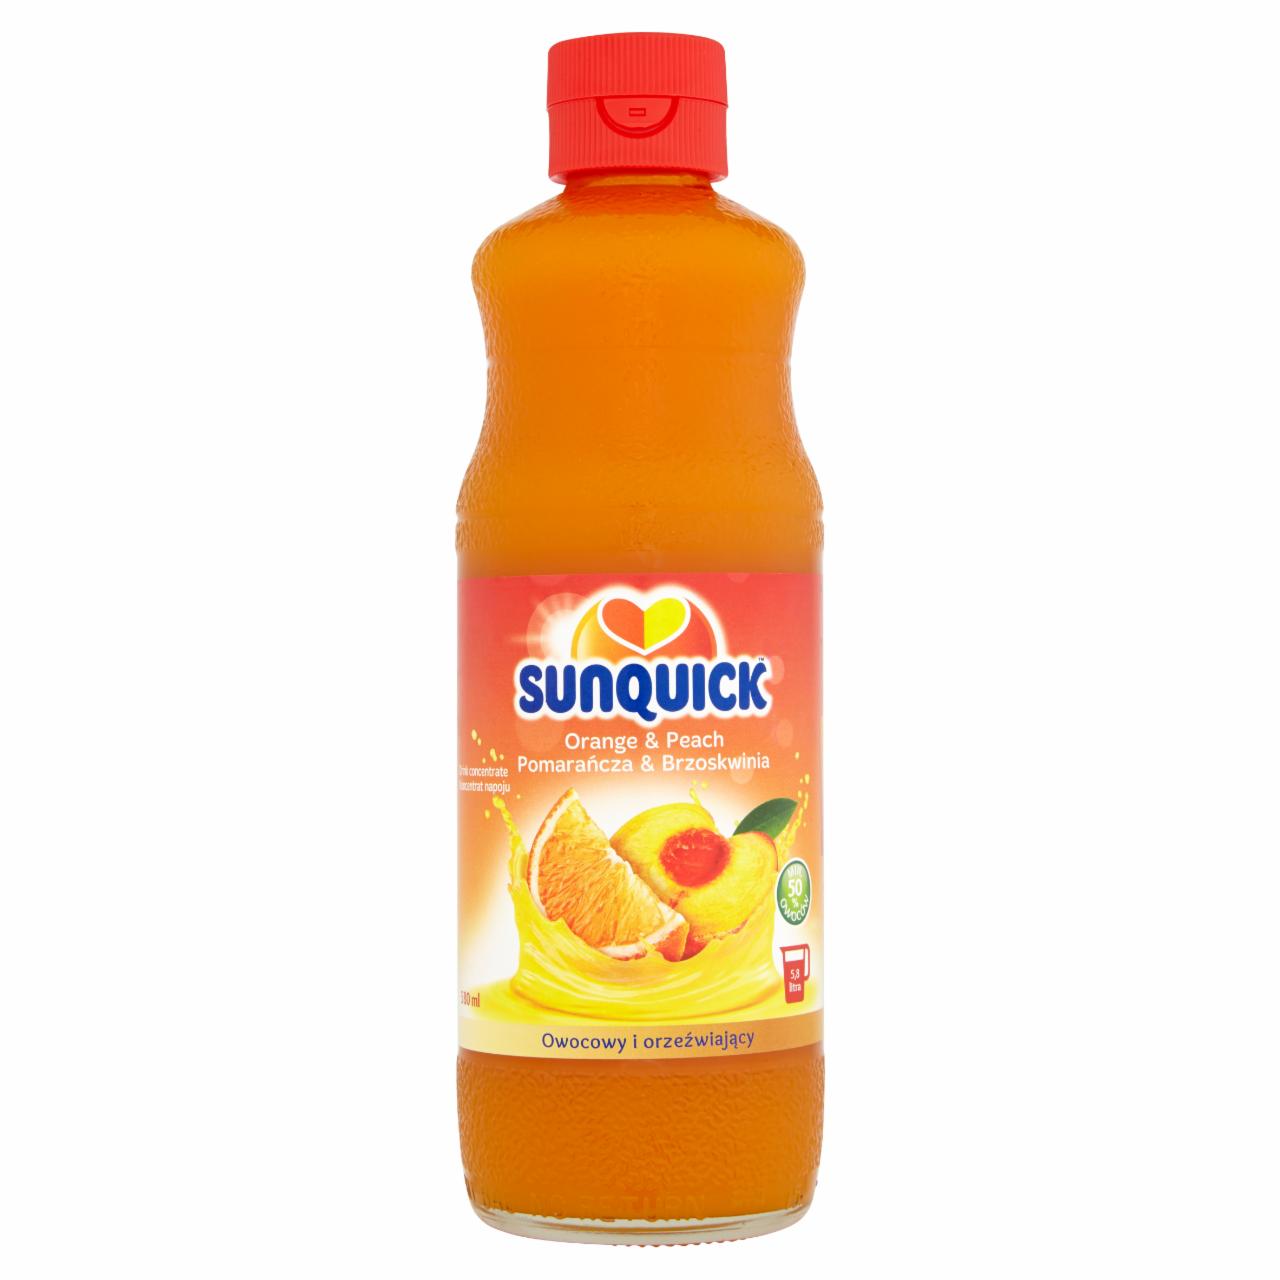 Zdjęcia - Sunquick Koncentrat napoju pomarańcza & brzoskwinia 580 ml